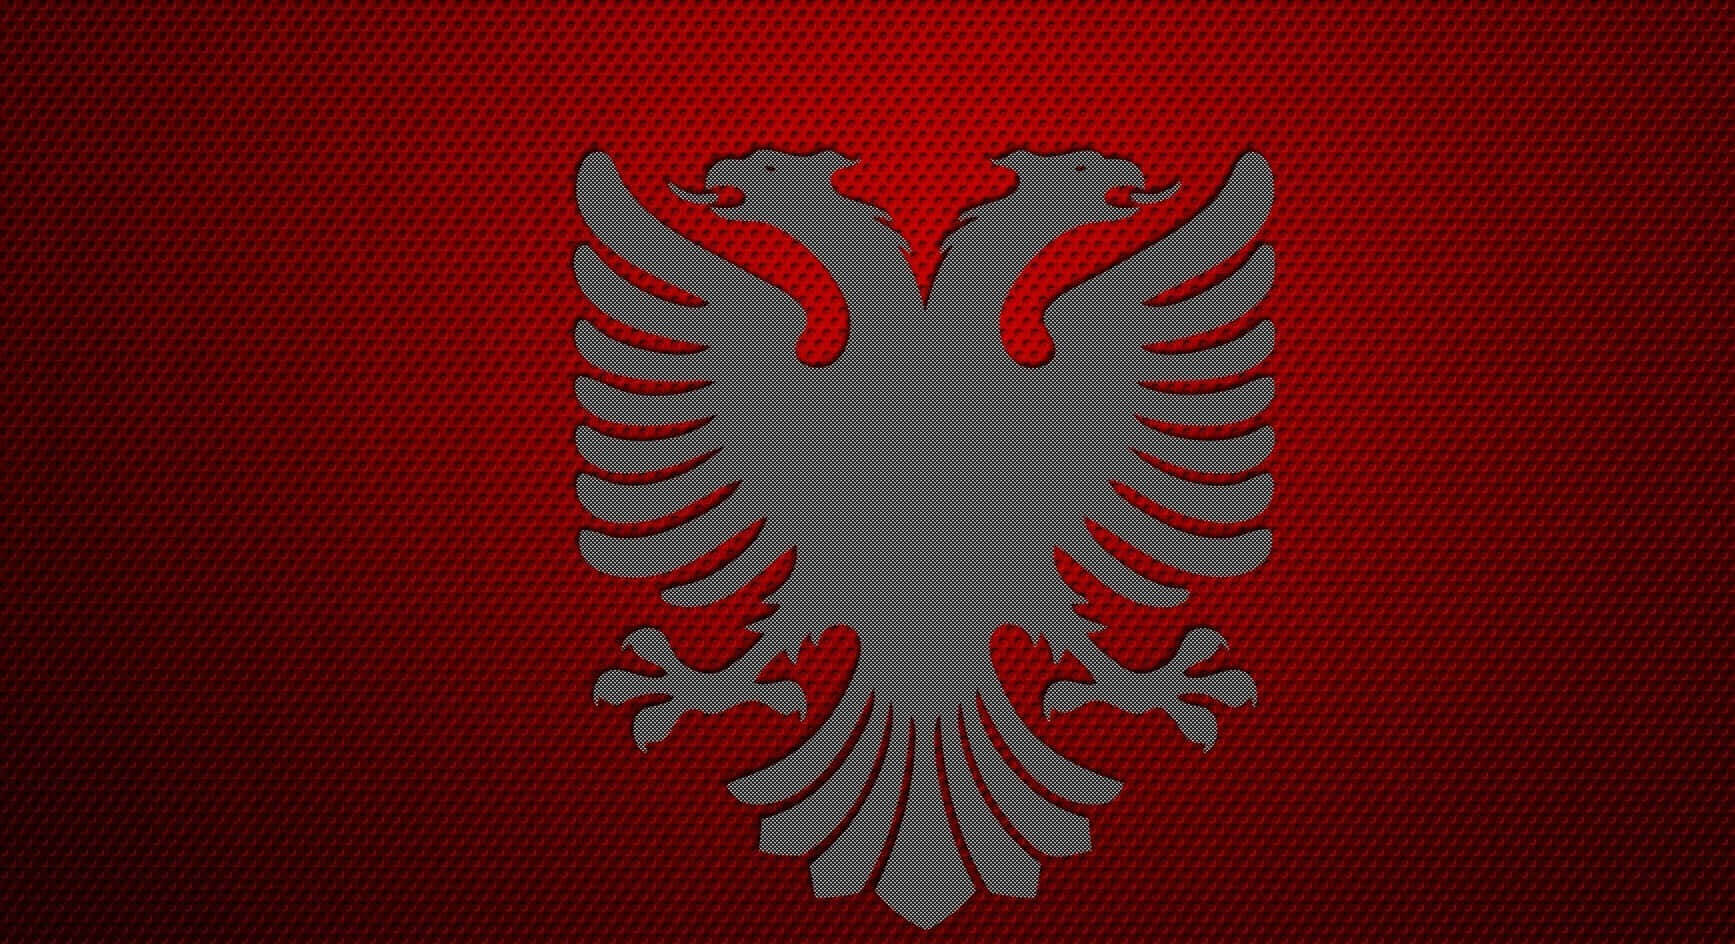 Afslørskønheden I Albanien.